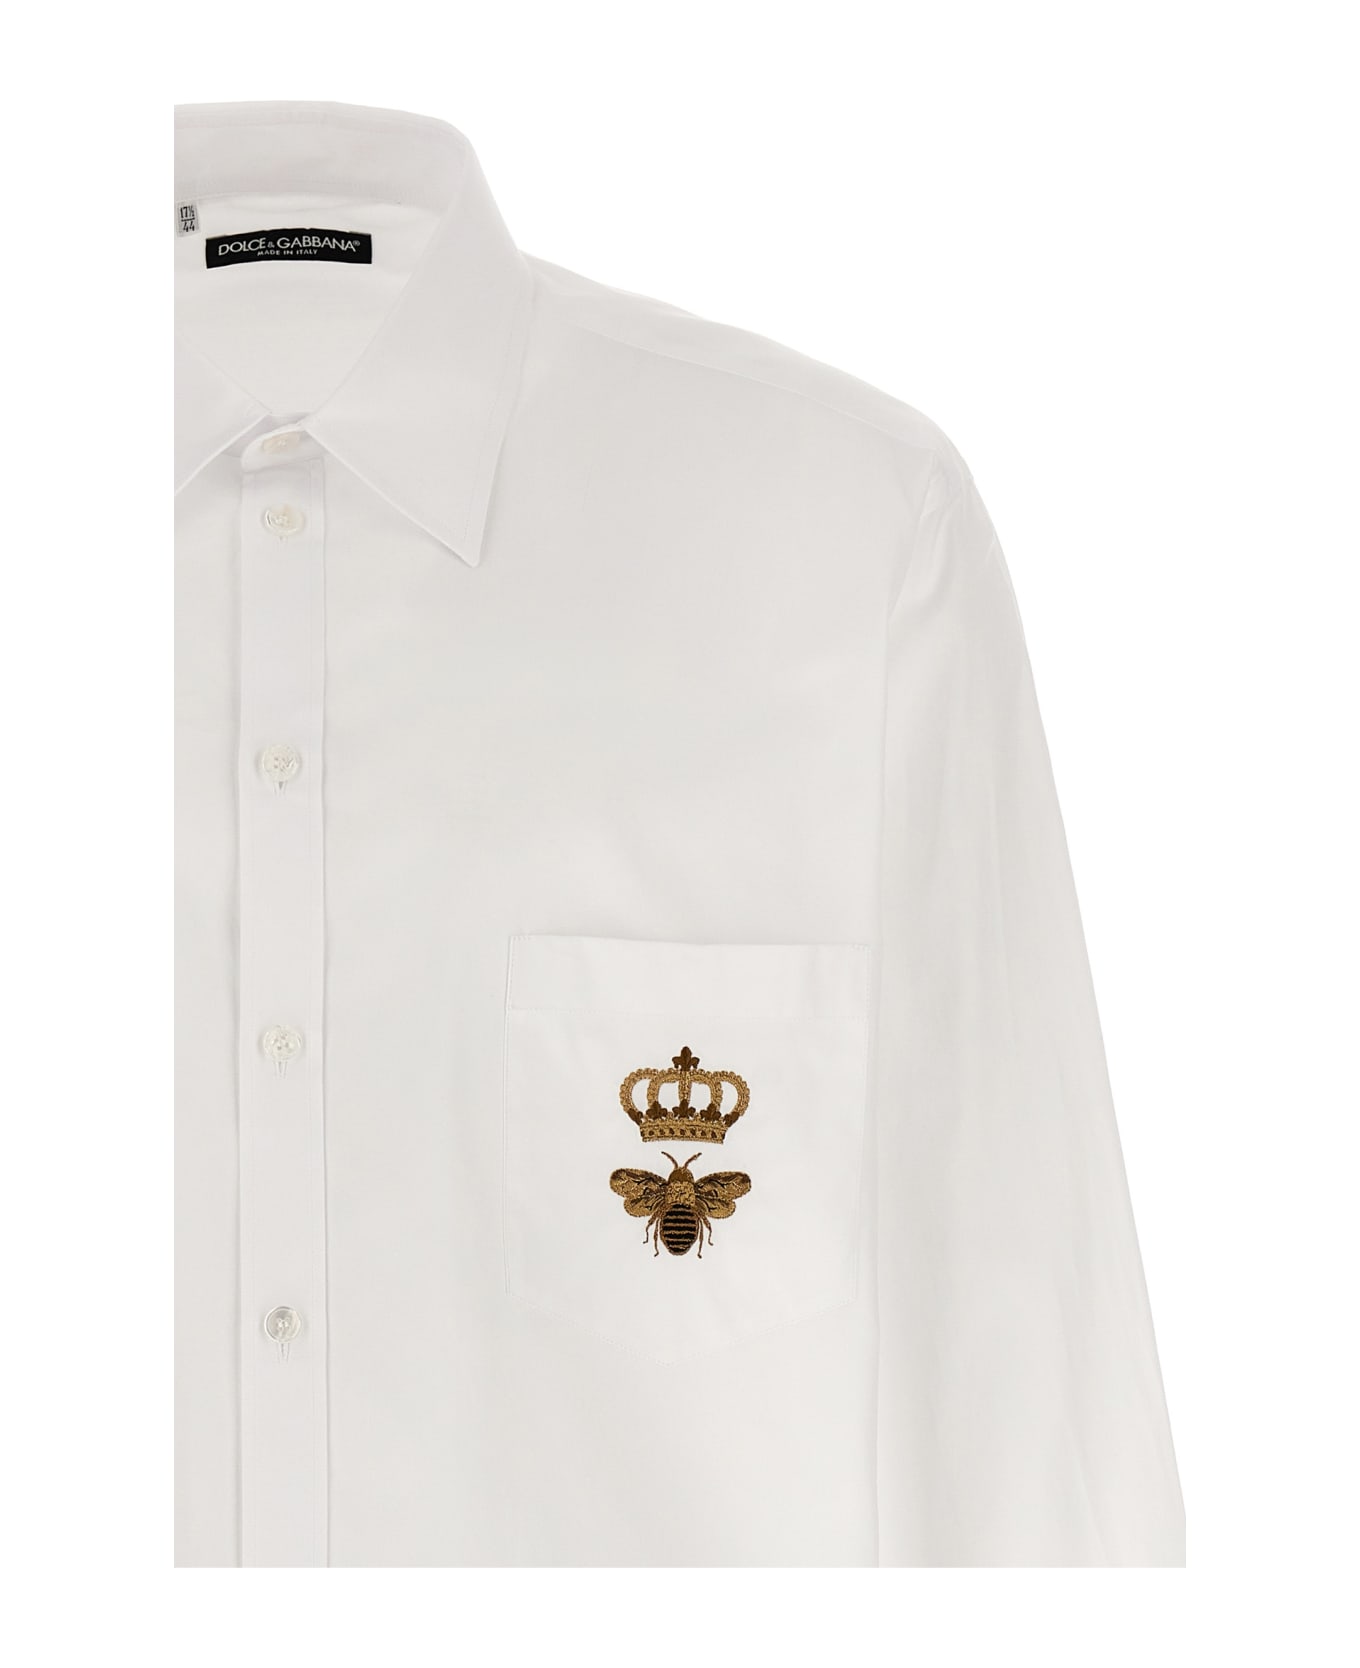 Dolce & Gabbana 'martini' Shirt - White シャツ